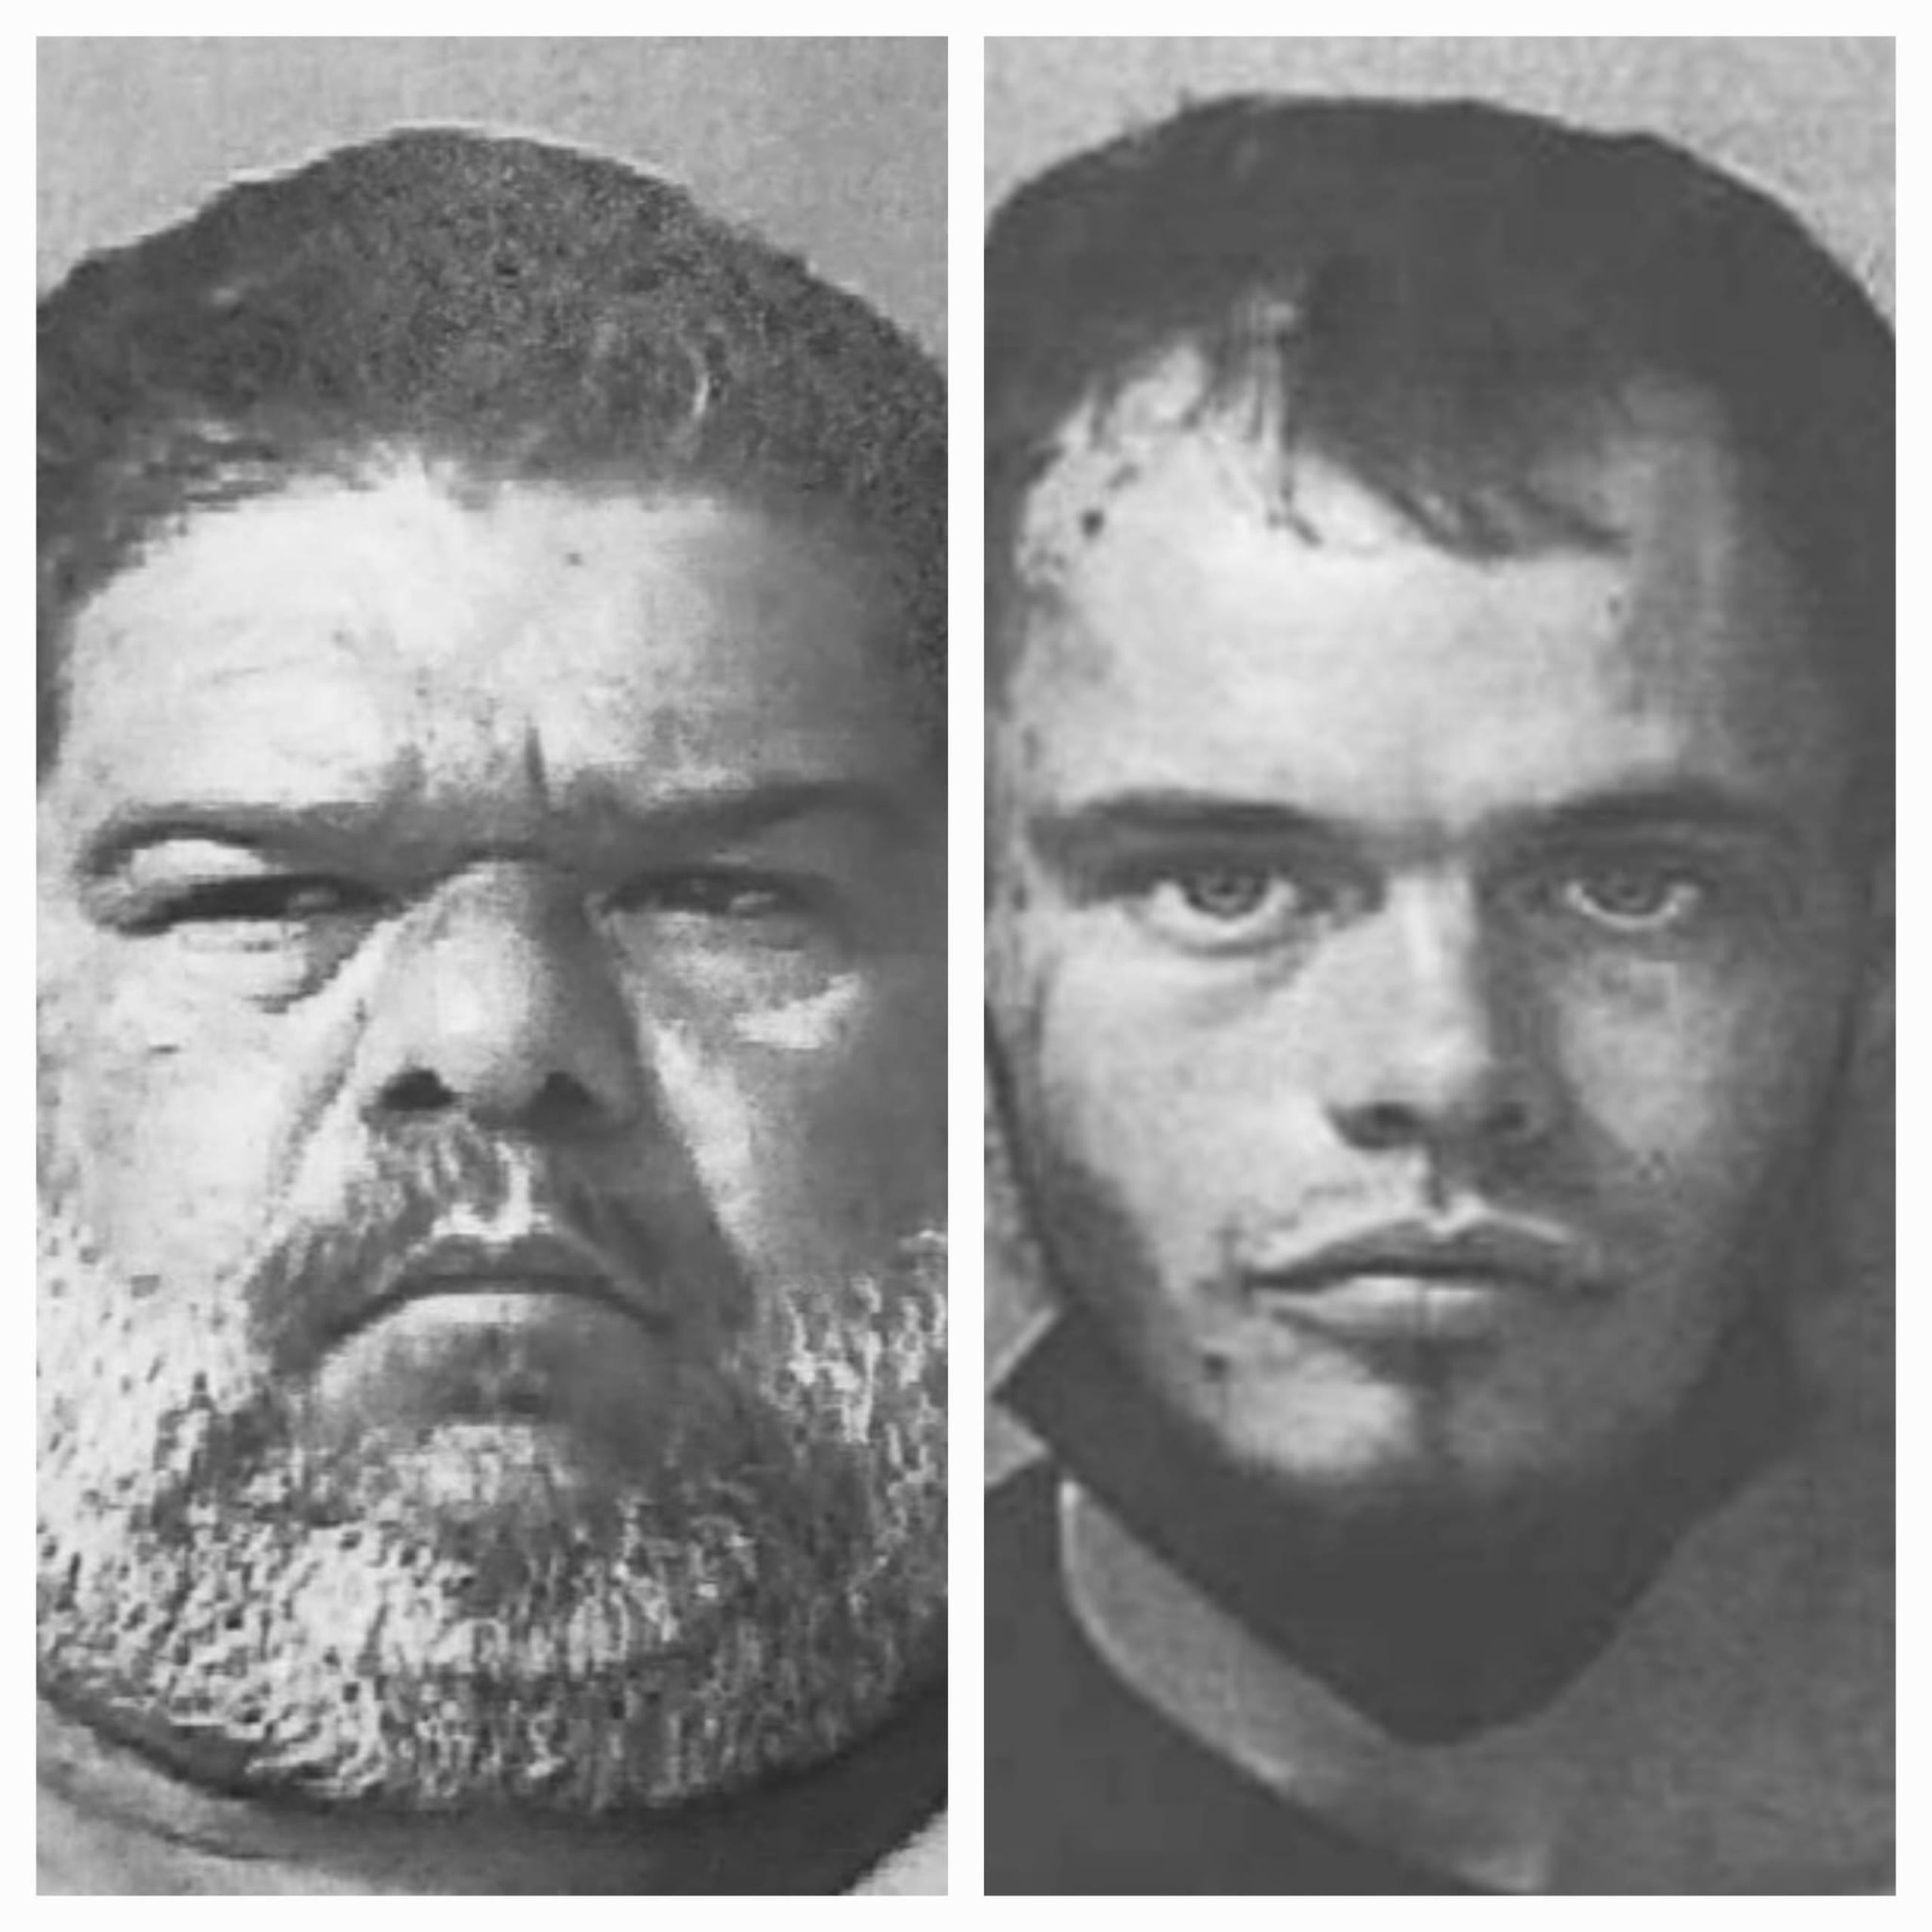 Los fugitivos Raúl Nieves Díaz, de 46 años y Sariel Guzmán Águila, de 23 años, acusados por maltrato a personas de edad avanzada, en hechos por separado, fueron arrestados en Barceloneta.